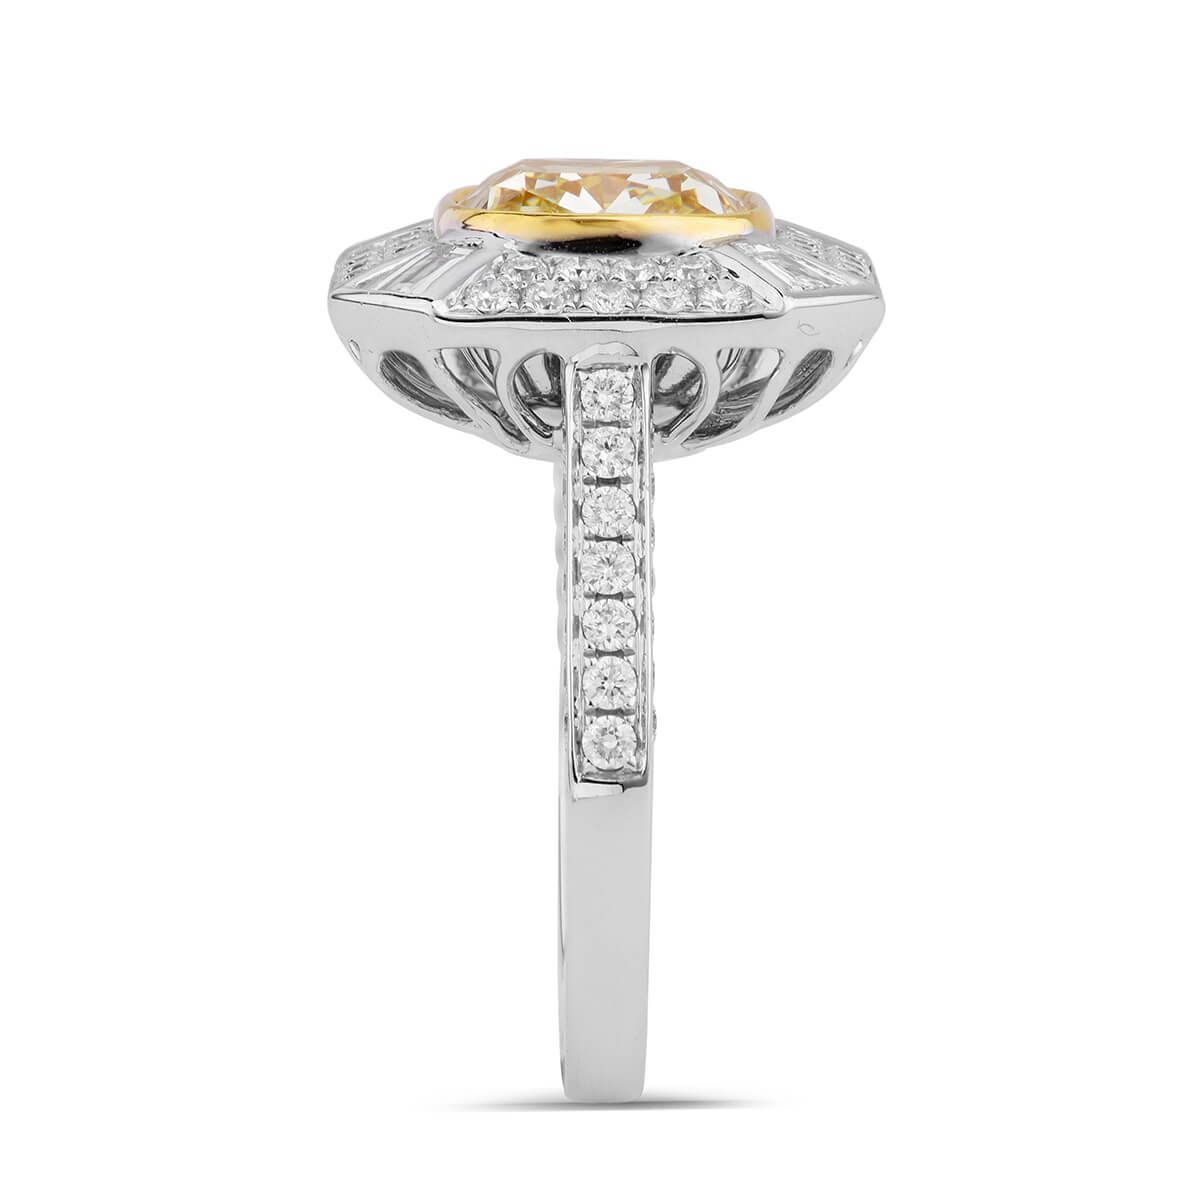 Fancy Light Yellow Diamond Ring, 1.09 Carat, Cushion shape, GIA Certified, 1209155985